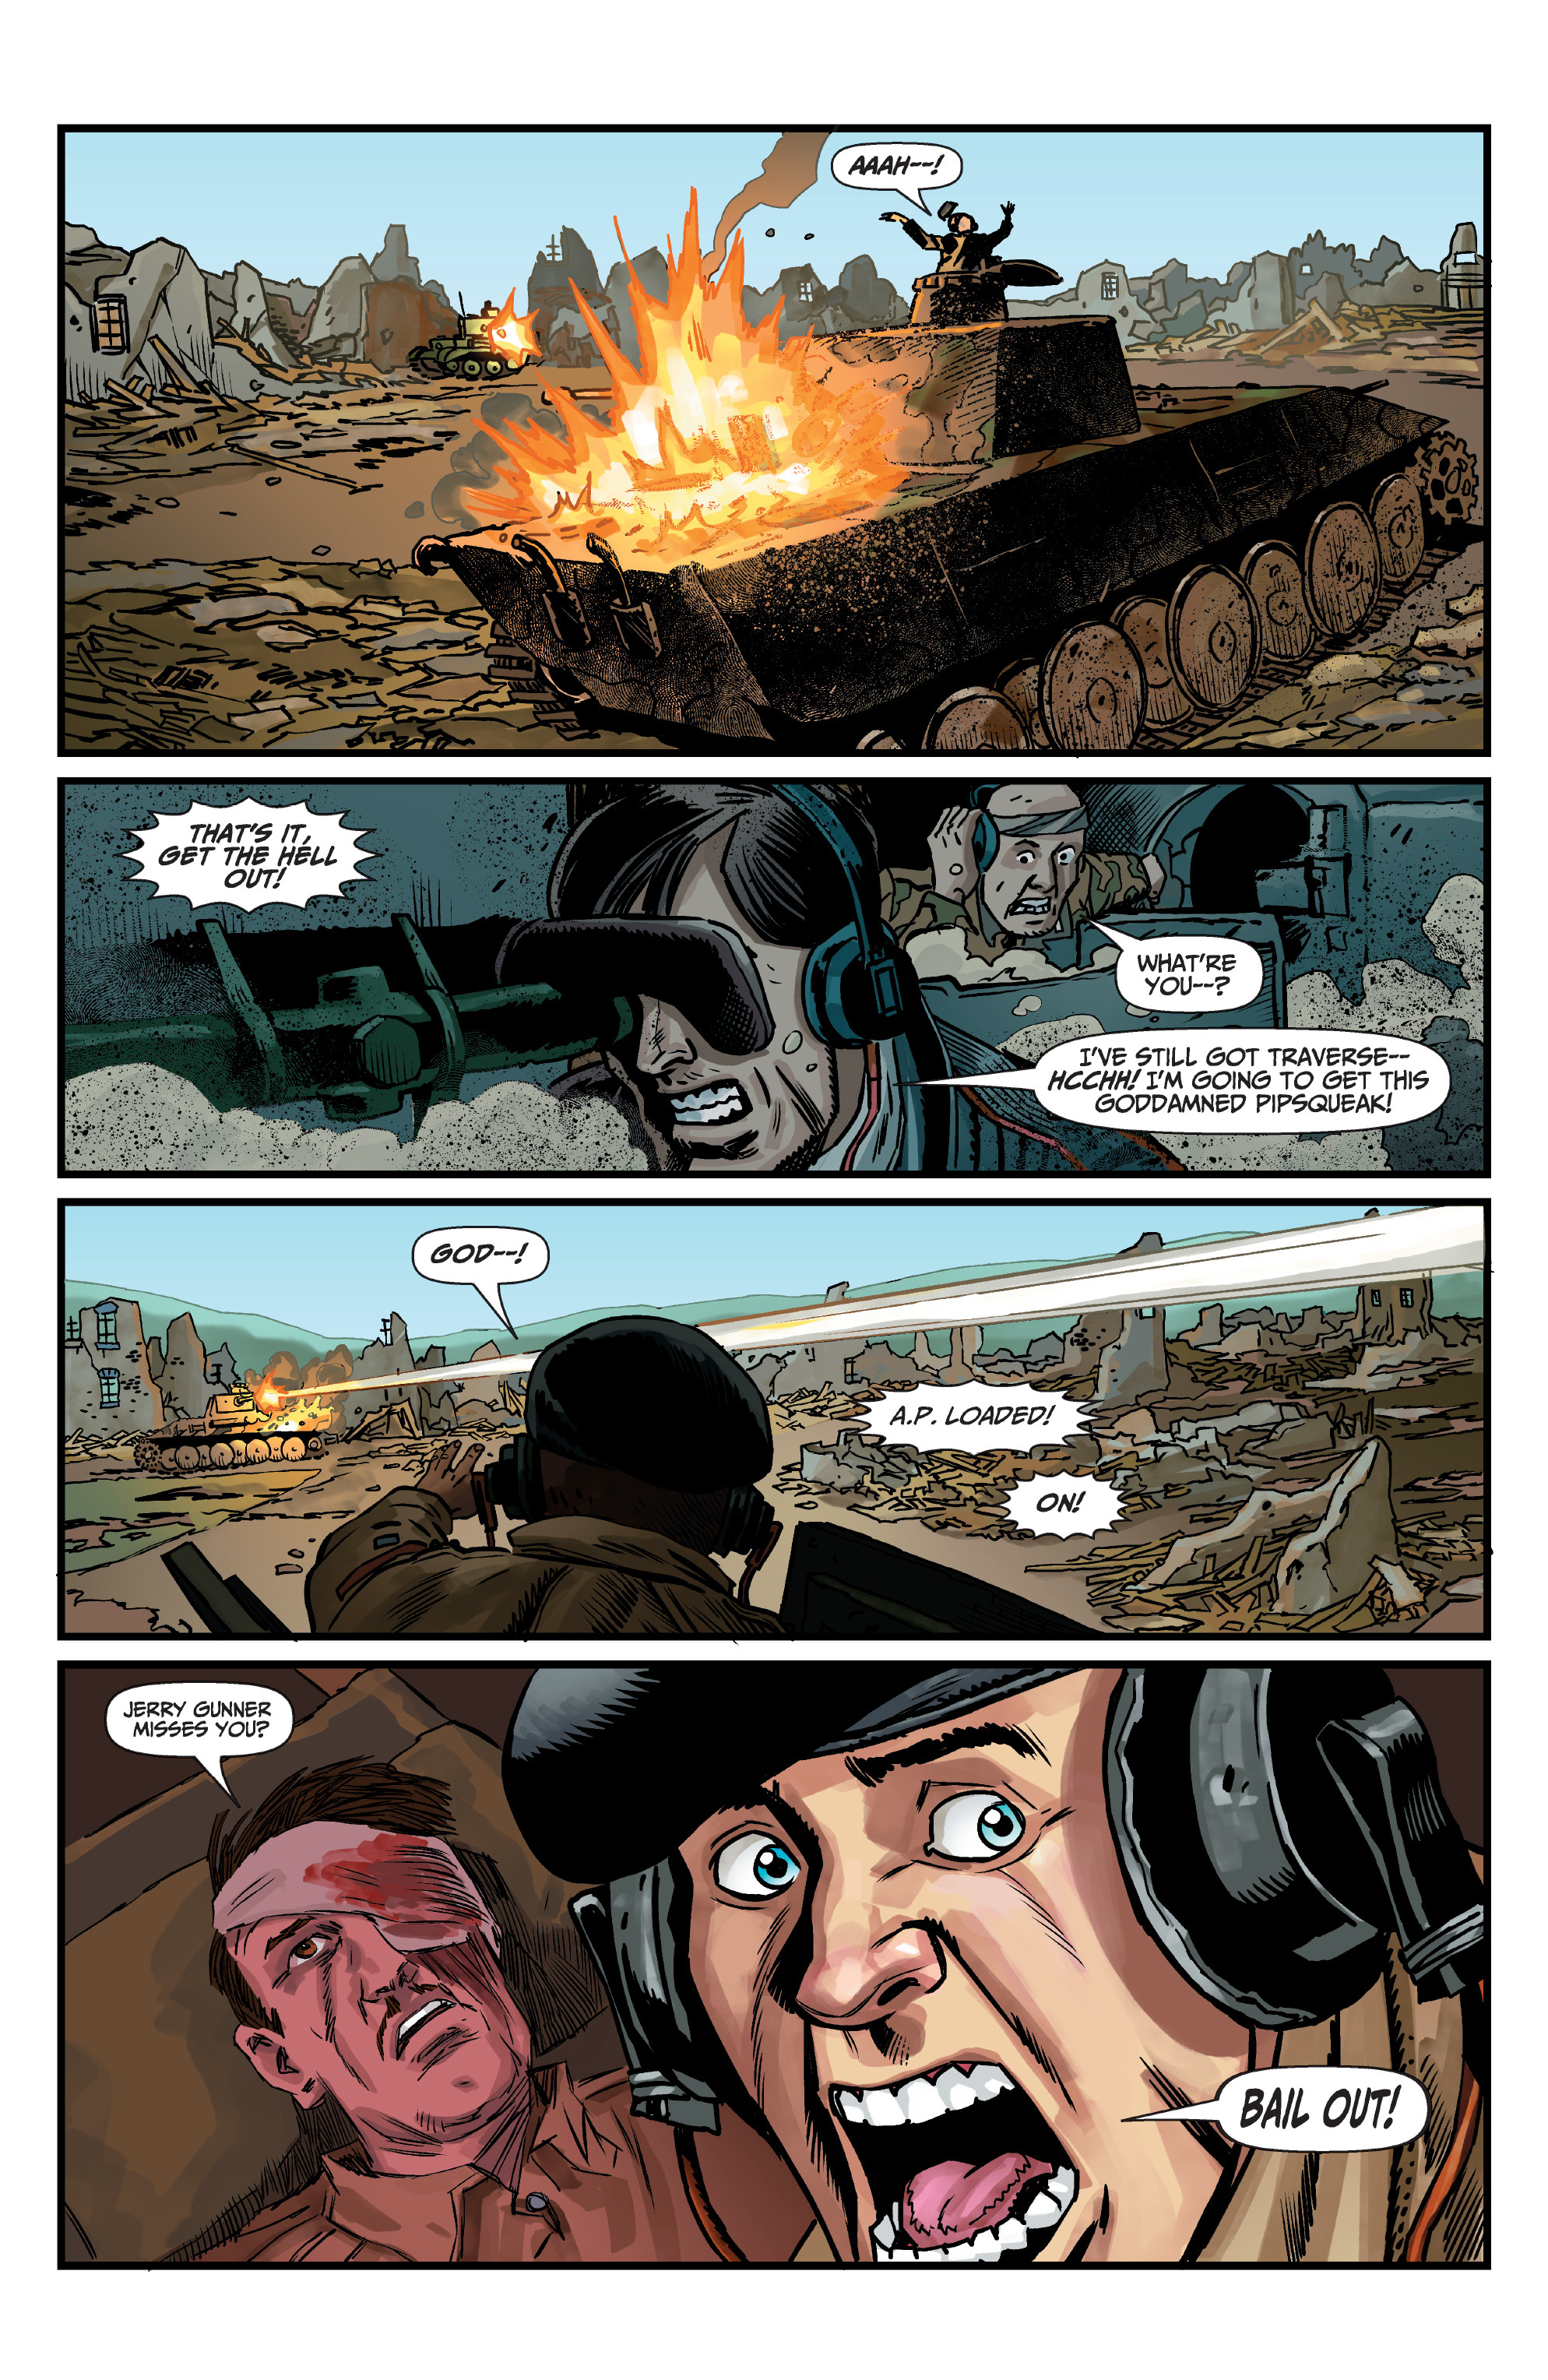 优享资讯 看看 黑袍纠察队 同 坦克世界 的碰撞 赏析漫画 出发 和 堡垒